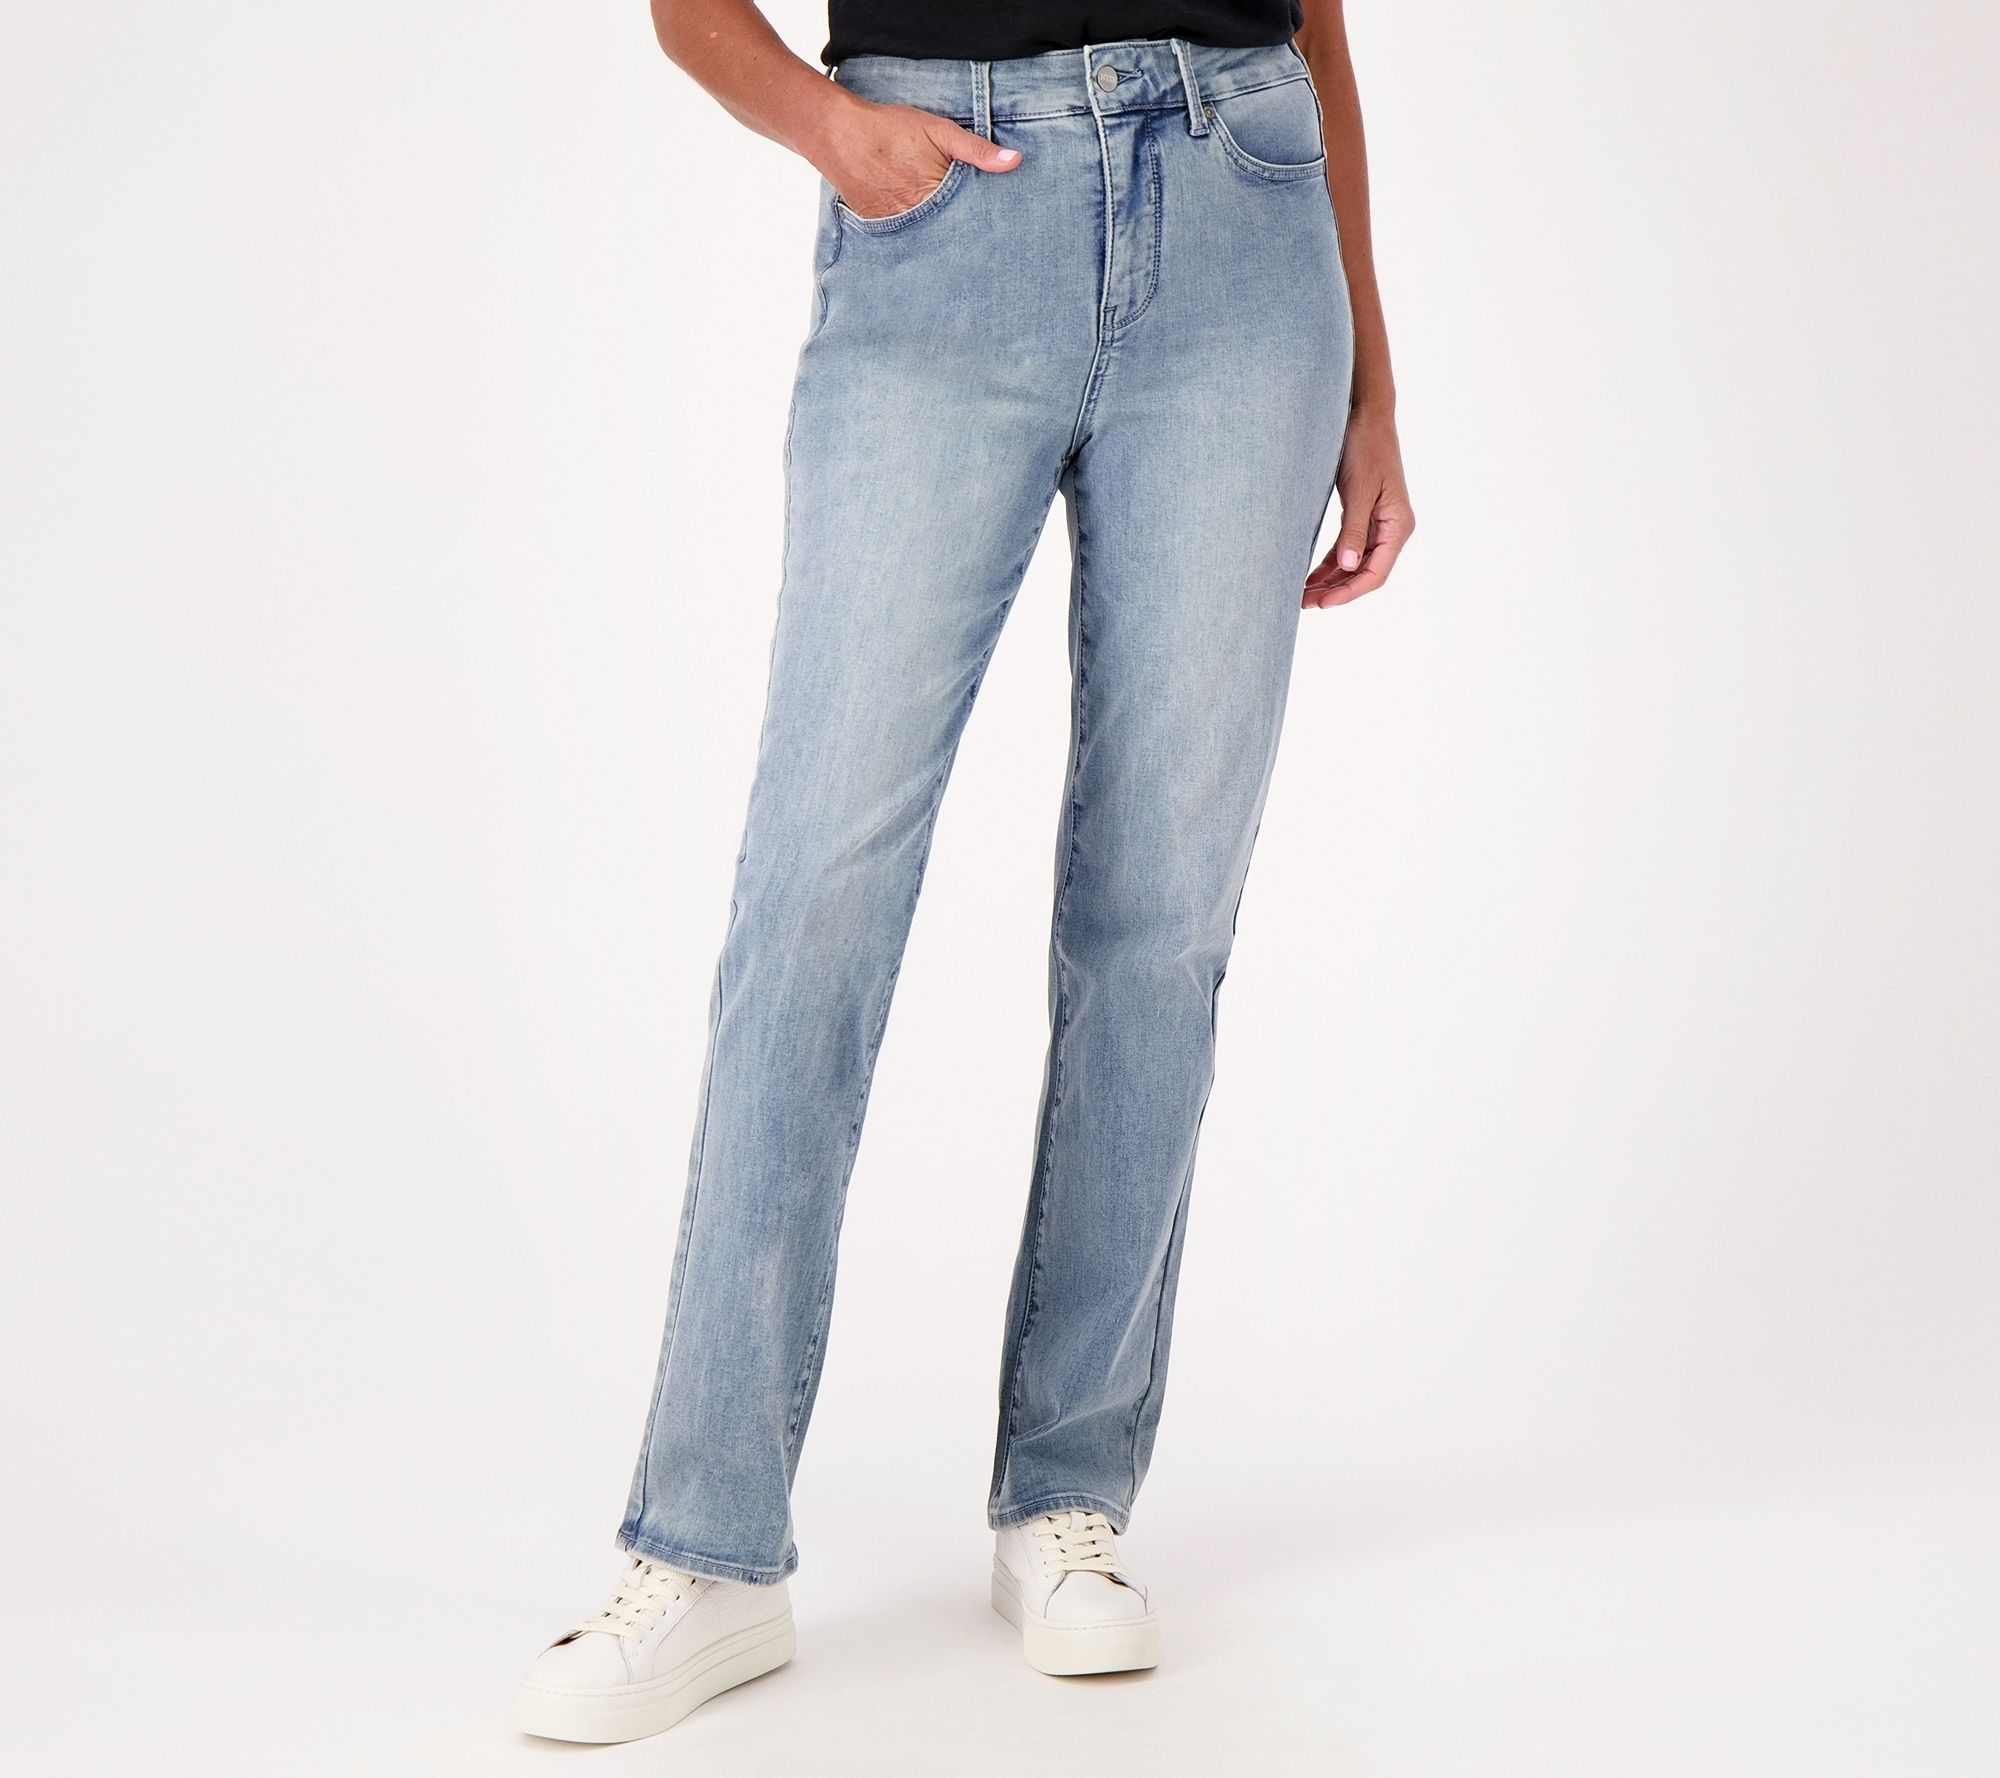 NYDJ Women's Curve Shaper Marilyn Straight Jeans Heavenly 14 Size